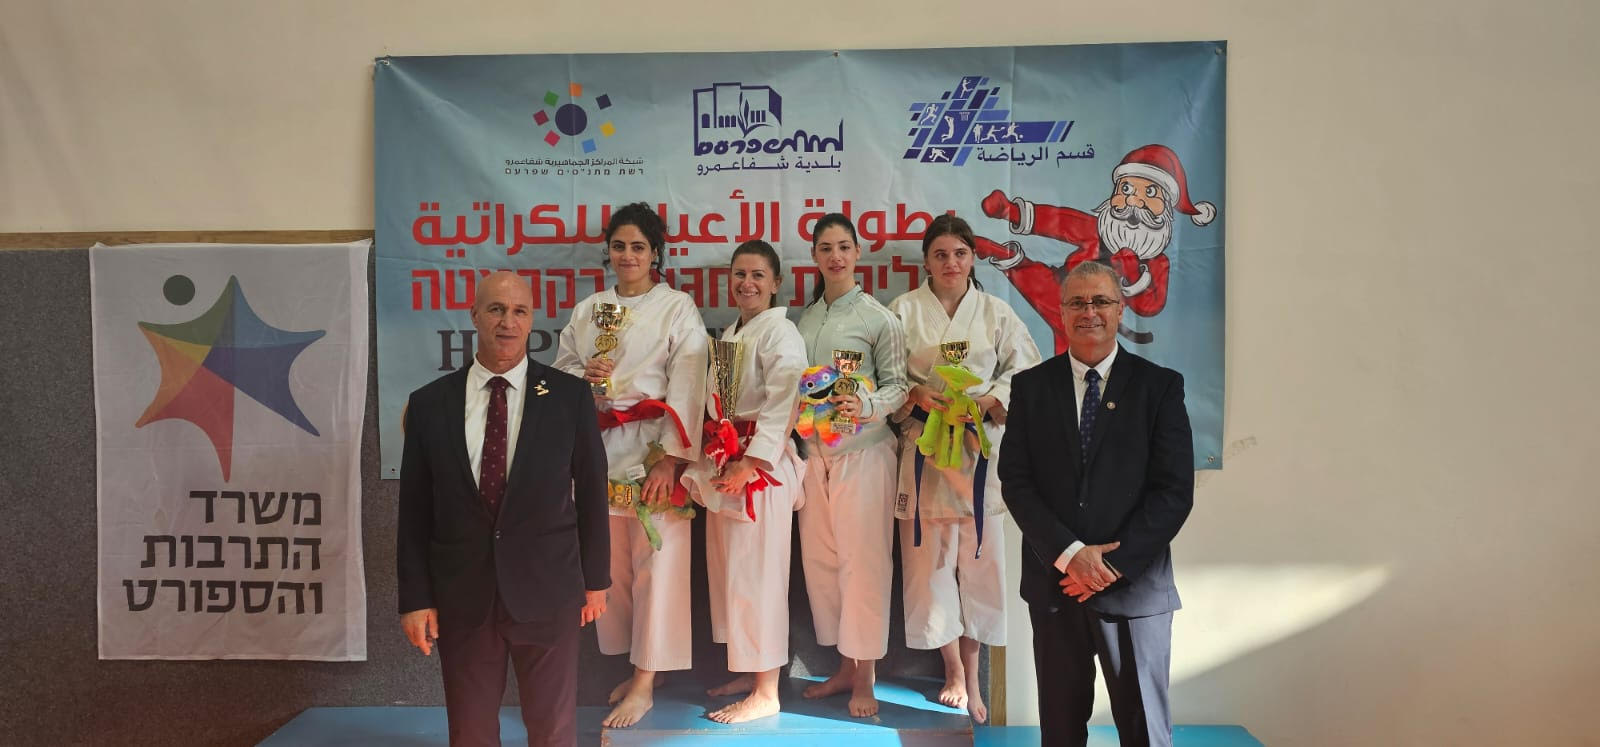 ابطال وبطلات مدرسة Hosni kai karate يشاركون في بطولة شفاعمرو القطرية